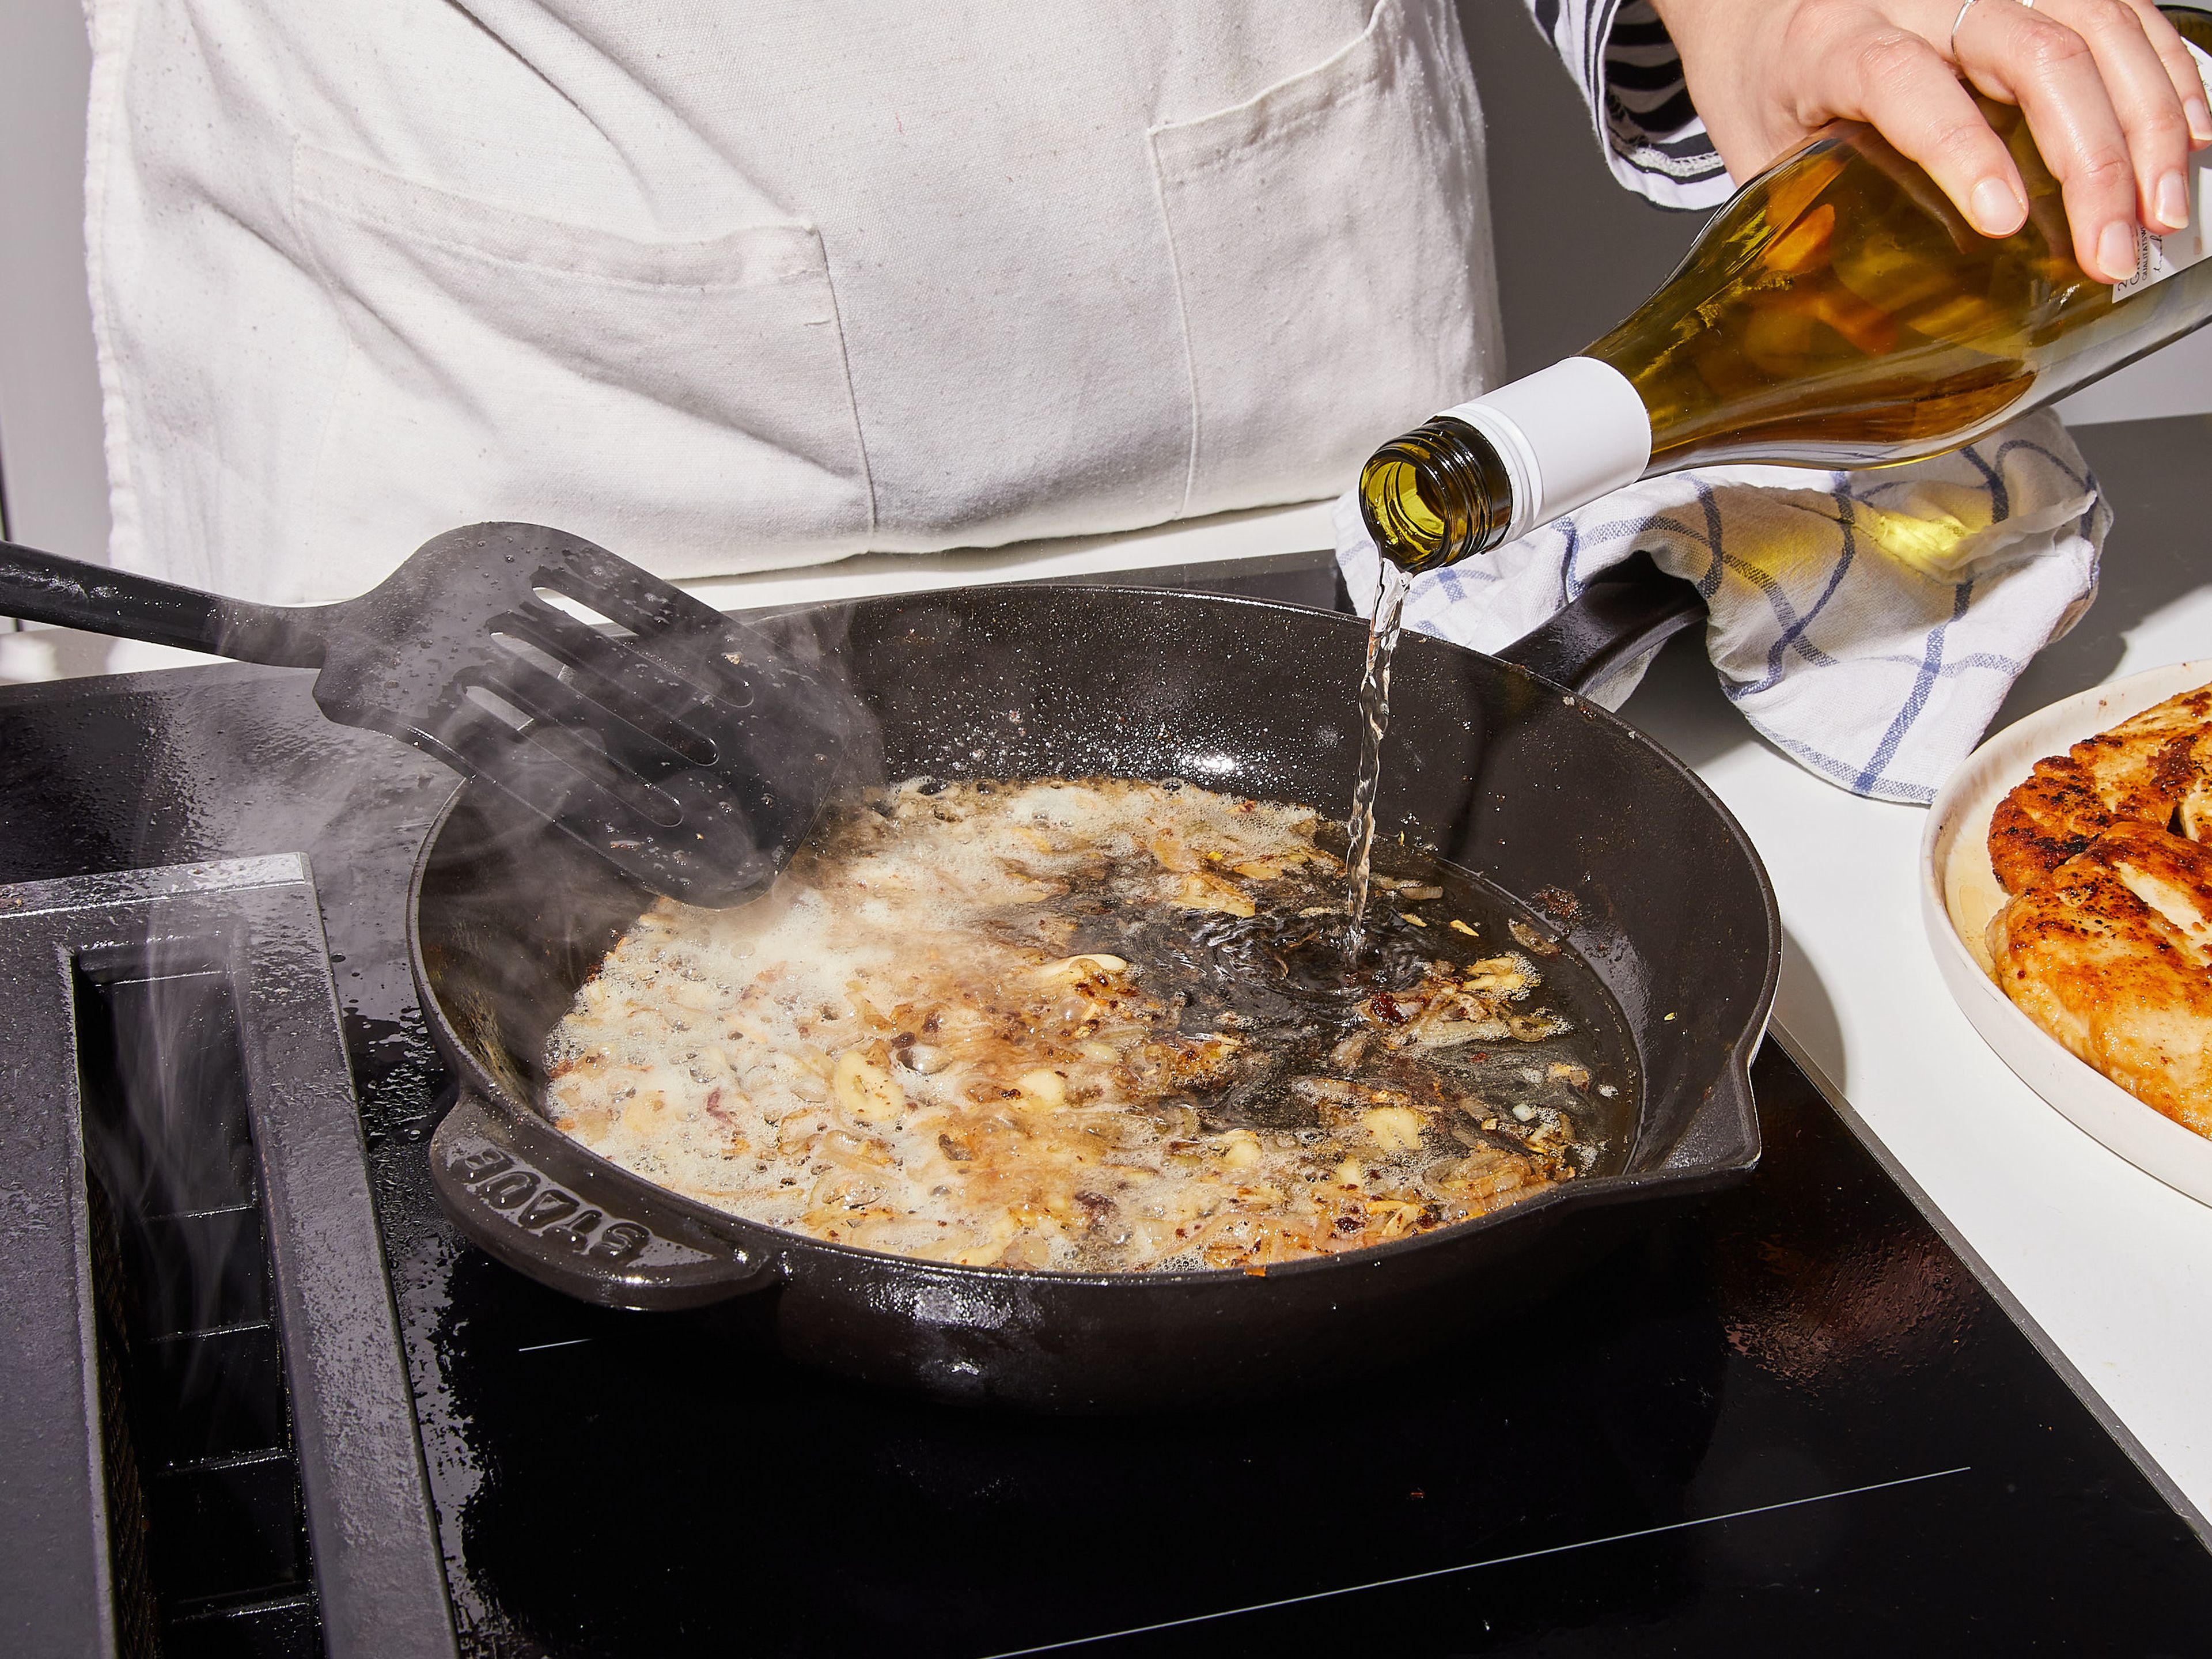 Herdplatte auf geringe bis mittlere Hitze einstellen. Bei Bedarf etwas mehr Olivenöl in die Pfanne geben. Knoblauch und Schalotte hinzufügen und unter ständigem Wenden dünsten, damit der Knoblauch nicht anbrennt. Ca. 3 Min. dünsten, bis die Schalotten glasig werden und der Knoblauch anfängt leicht zu bräunen. Wein und Kapern dazugeben und mit dem Kochlöffel die braun gebratenen Stückchen vom Boden der Pfanne lösen.